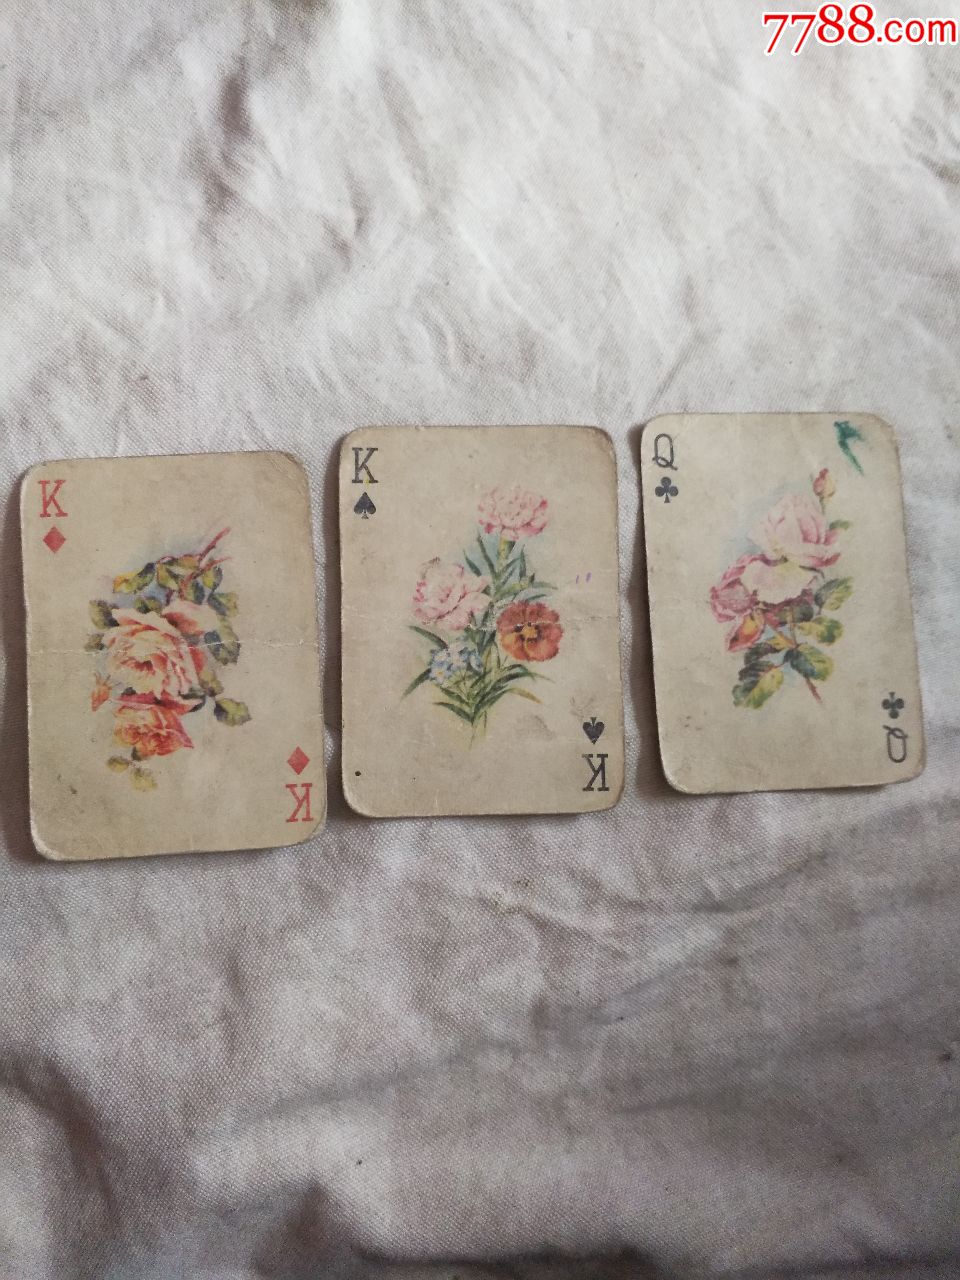 老扑克牌3张(花草类)